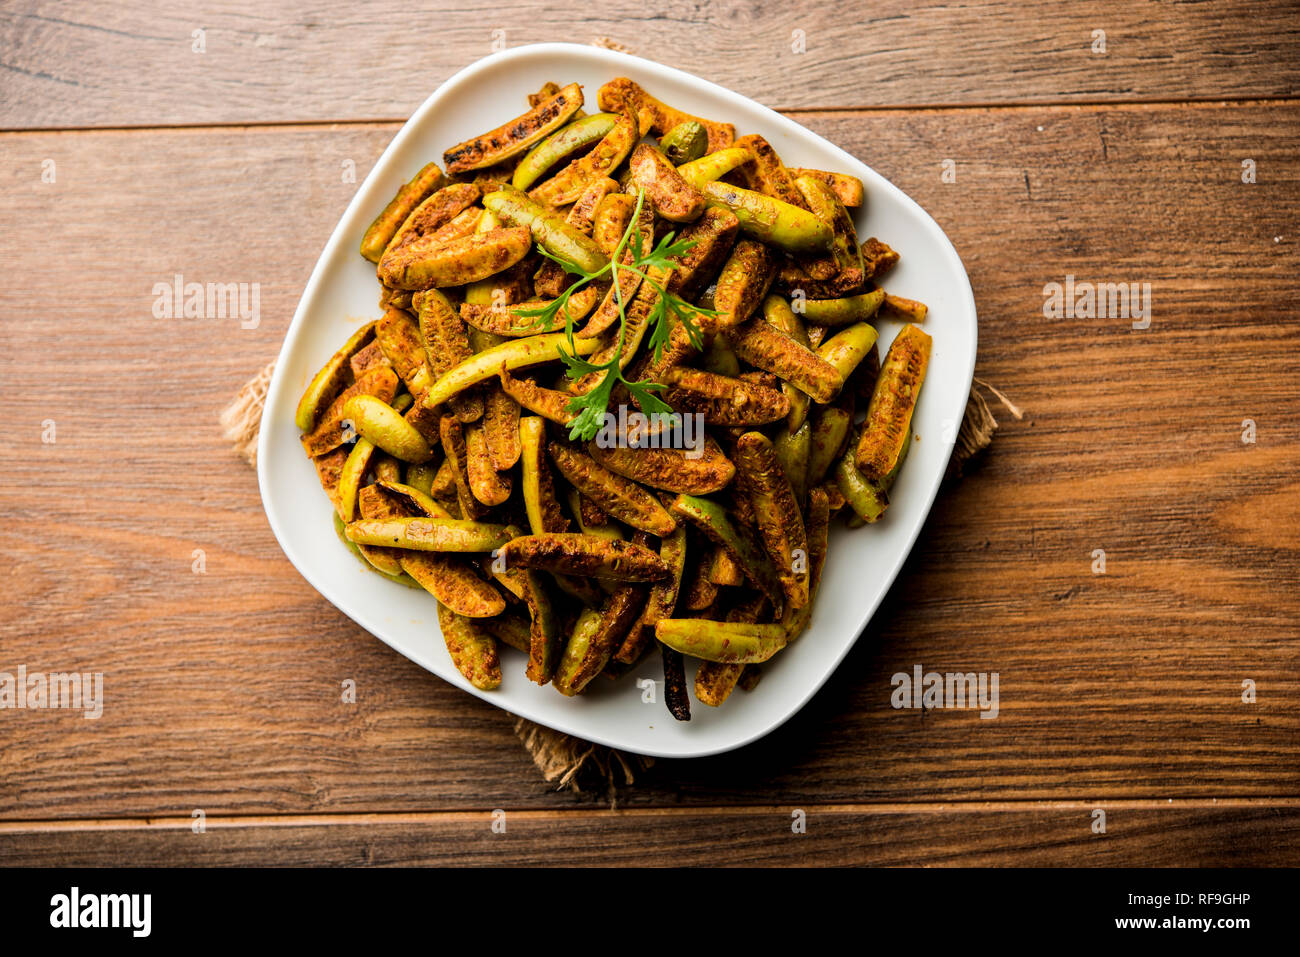 Tindora Sabzi / Tendli / tondli Fry also known as Ivy Gourd fry recipe. selective focus Stock Photo